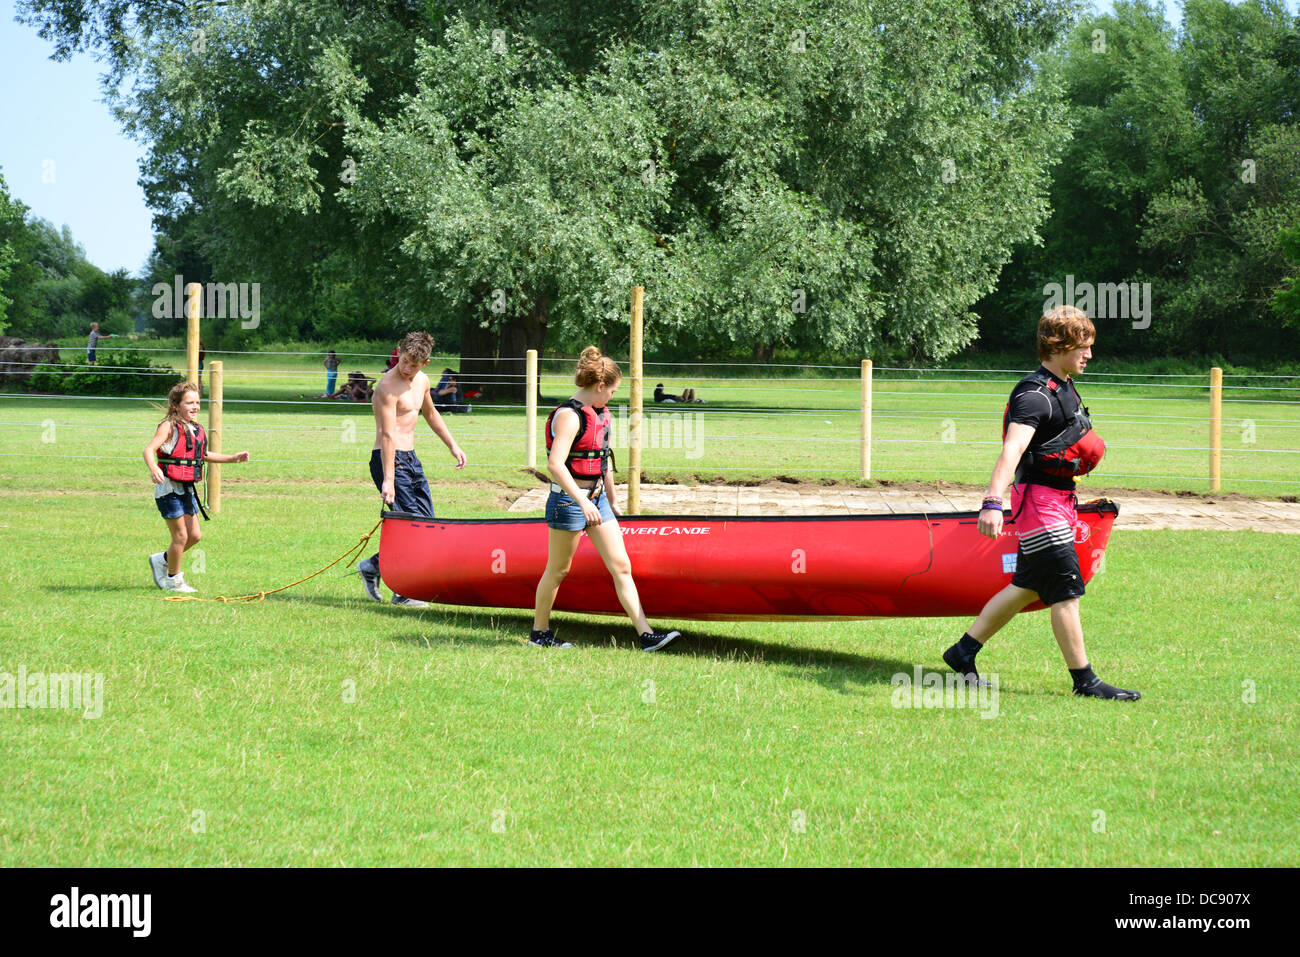 Bambini che portano i kayak torna al capannone in barca sul fiume Tamigi, Pangbourne, Berkshire, Inghilterra. Regno Unito Foto Stock